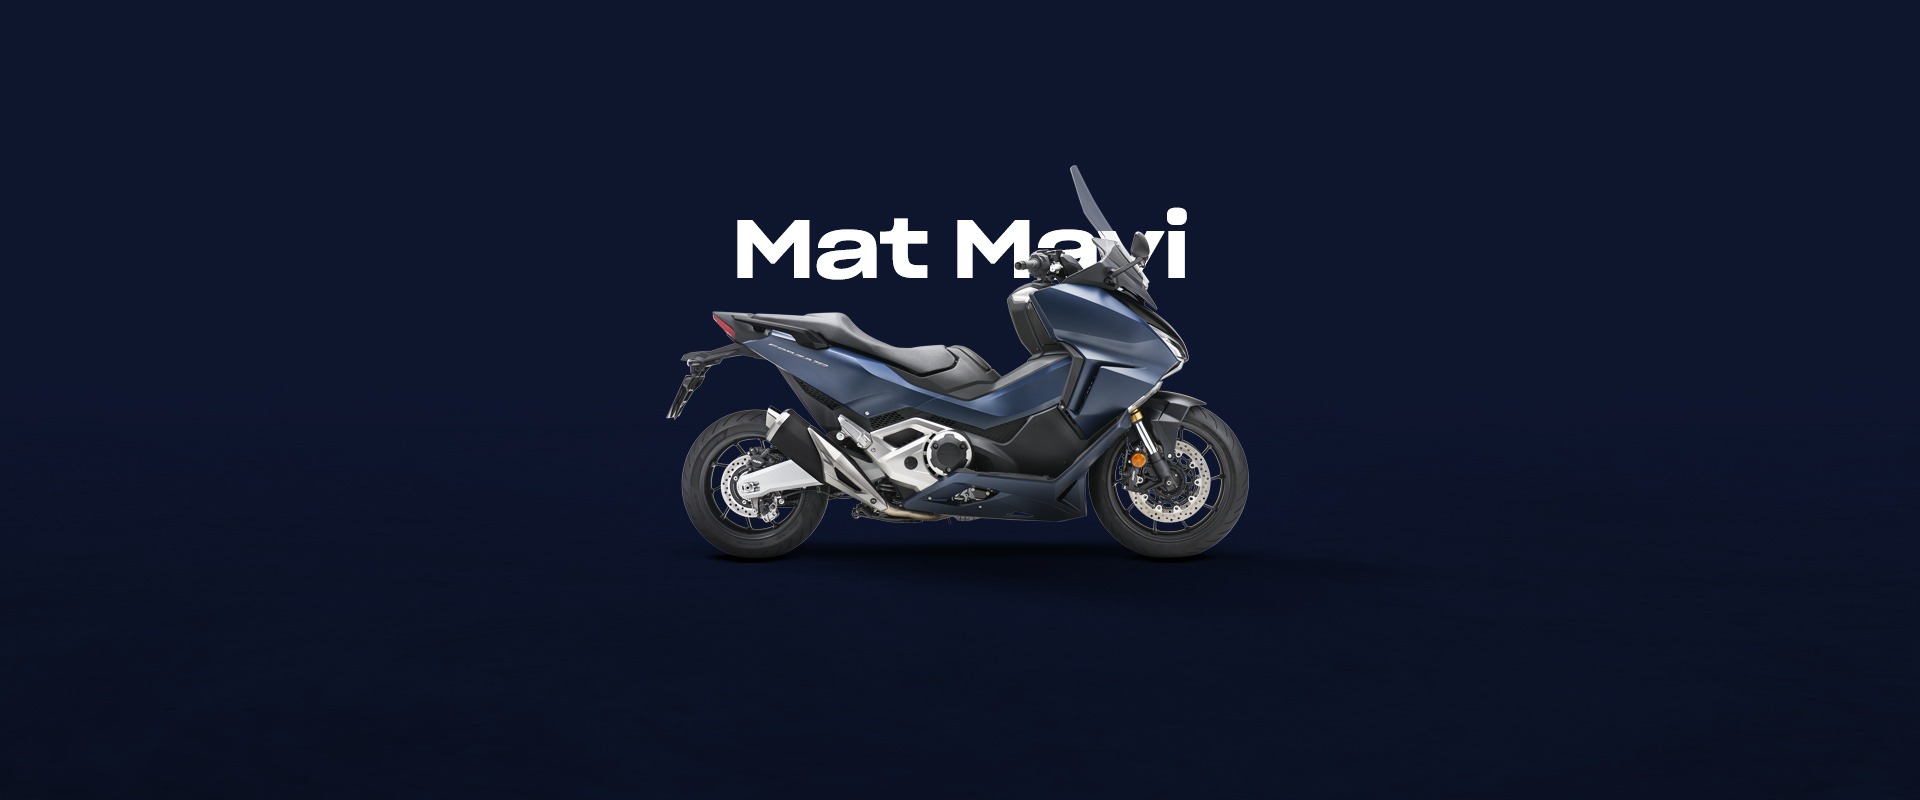  Honda Emre Mat Mavi